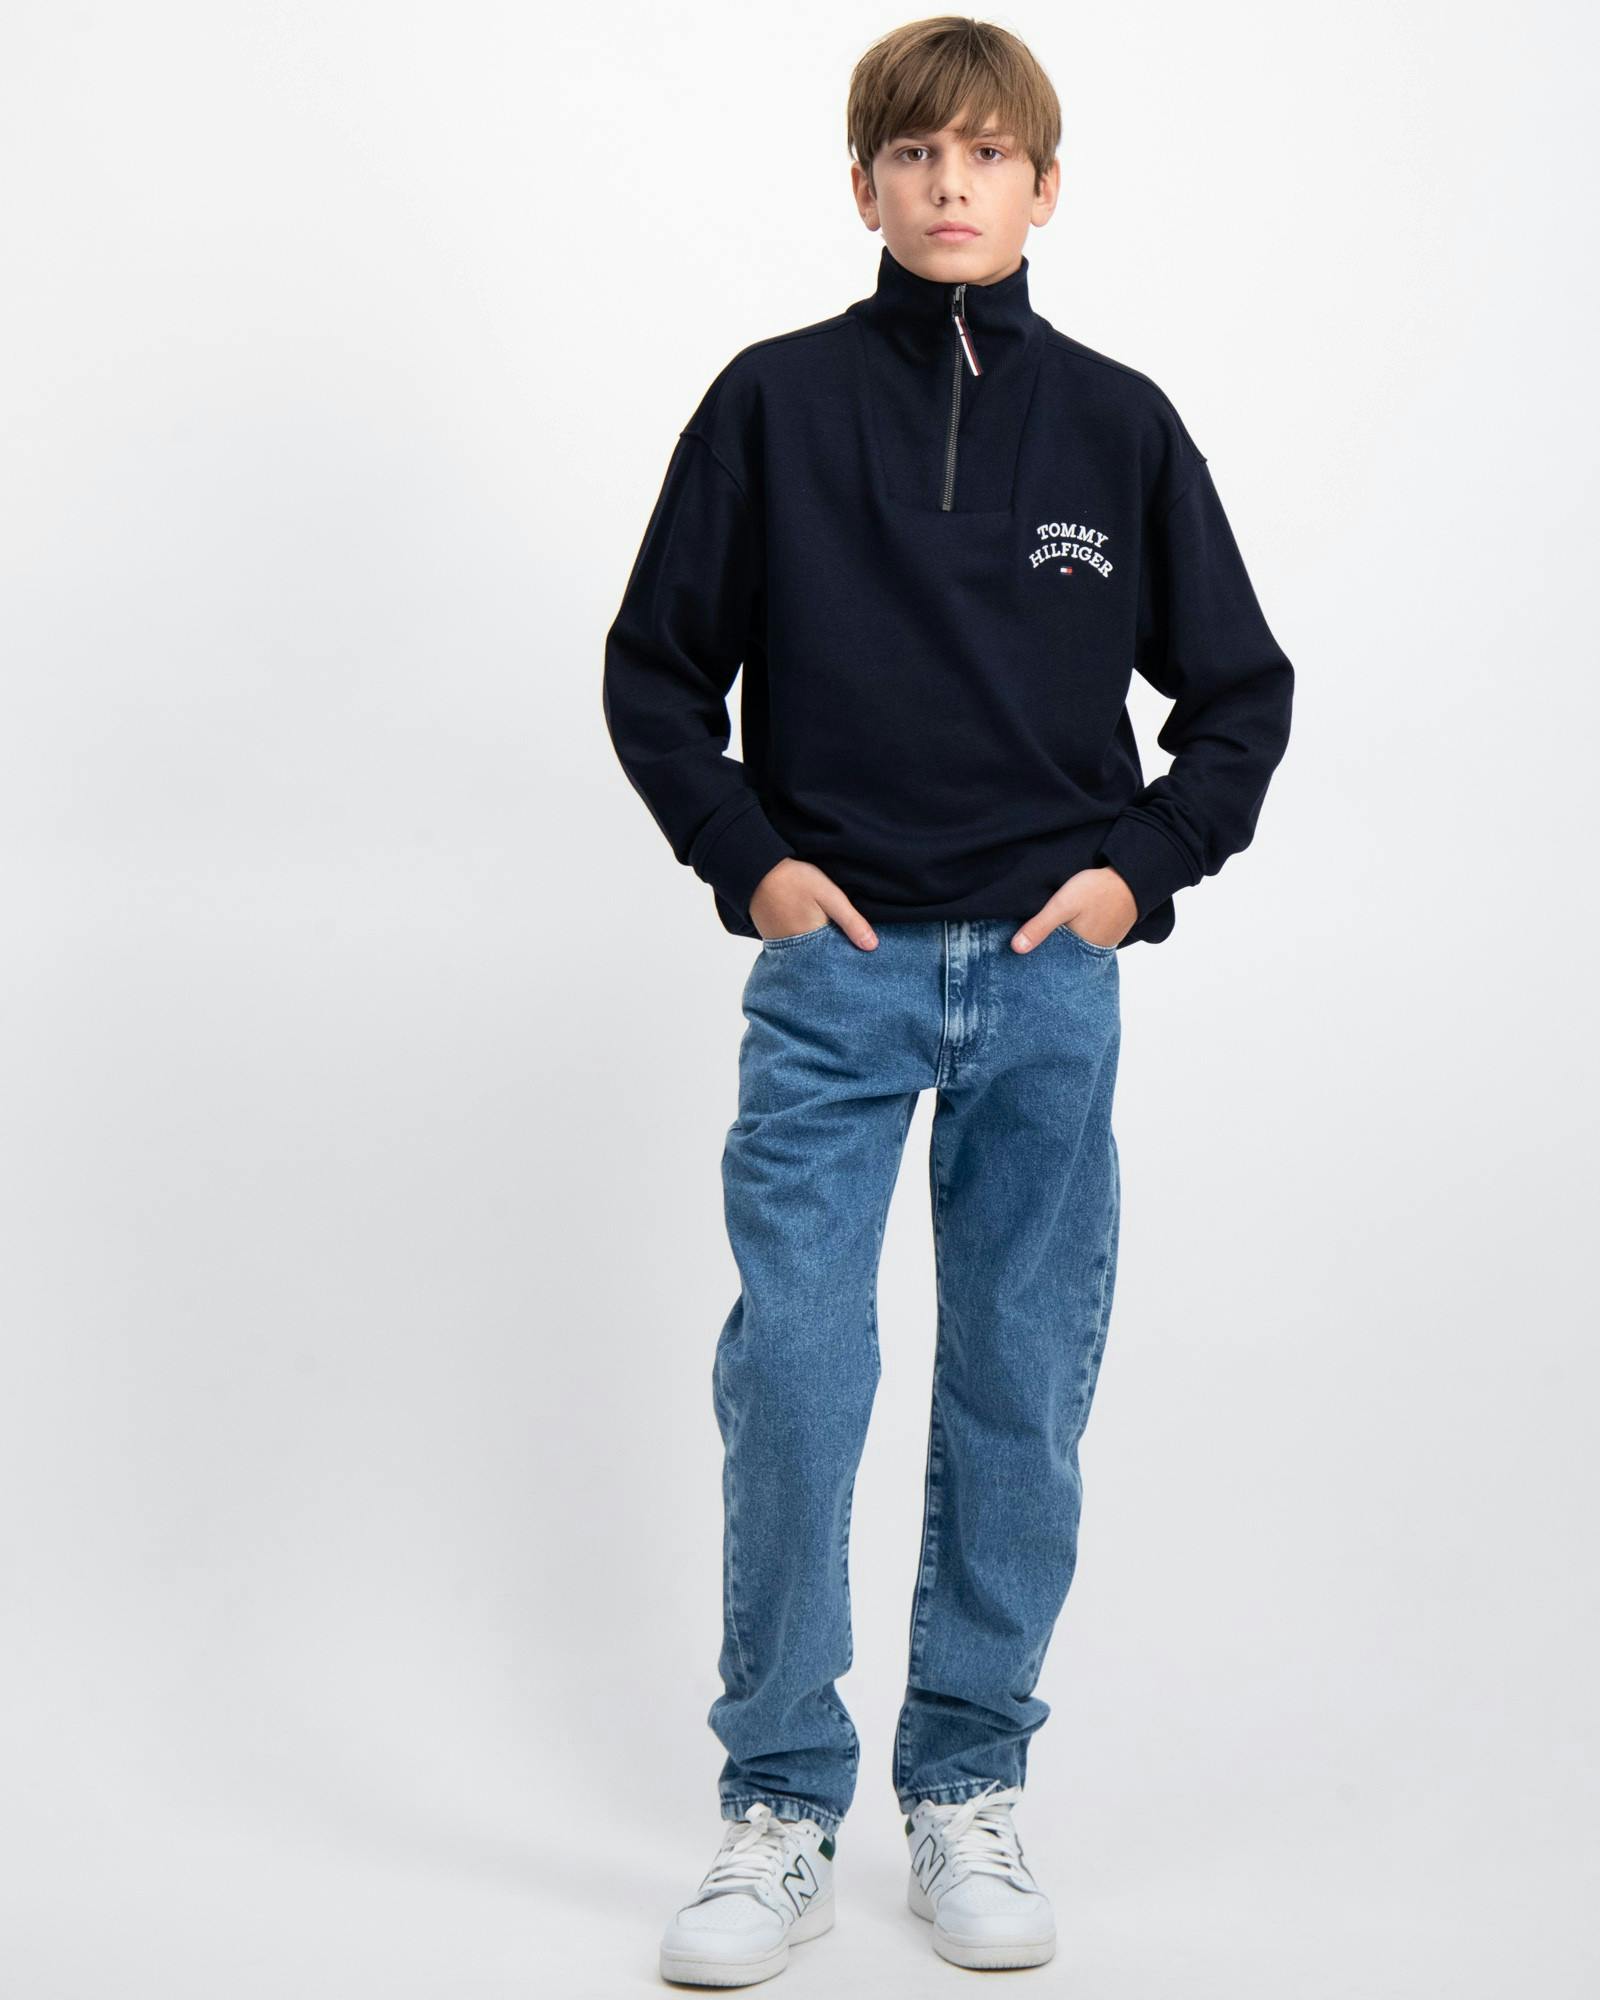 Tommy Hilfiger Jeans und für Brand | Jugendliche Kids Kinder Store